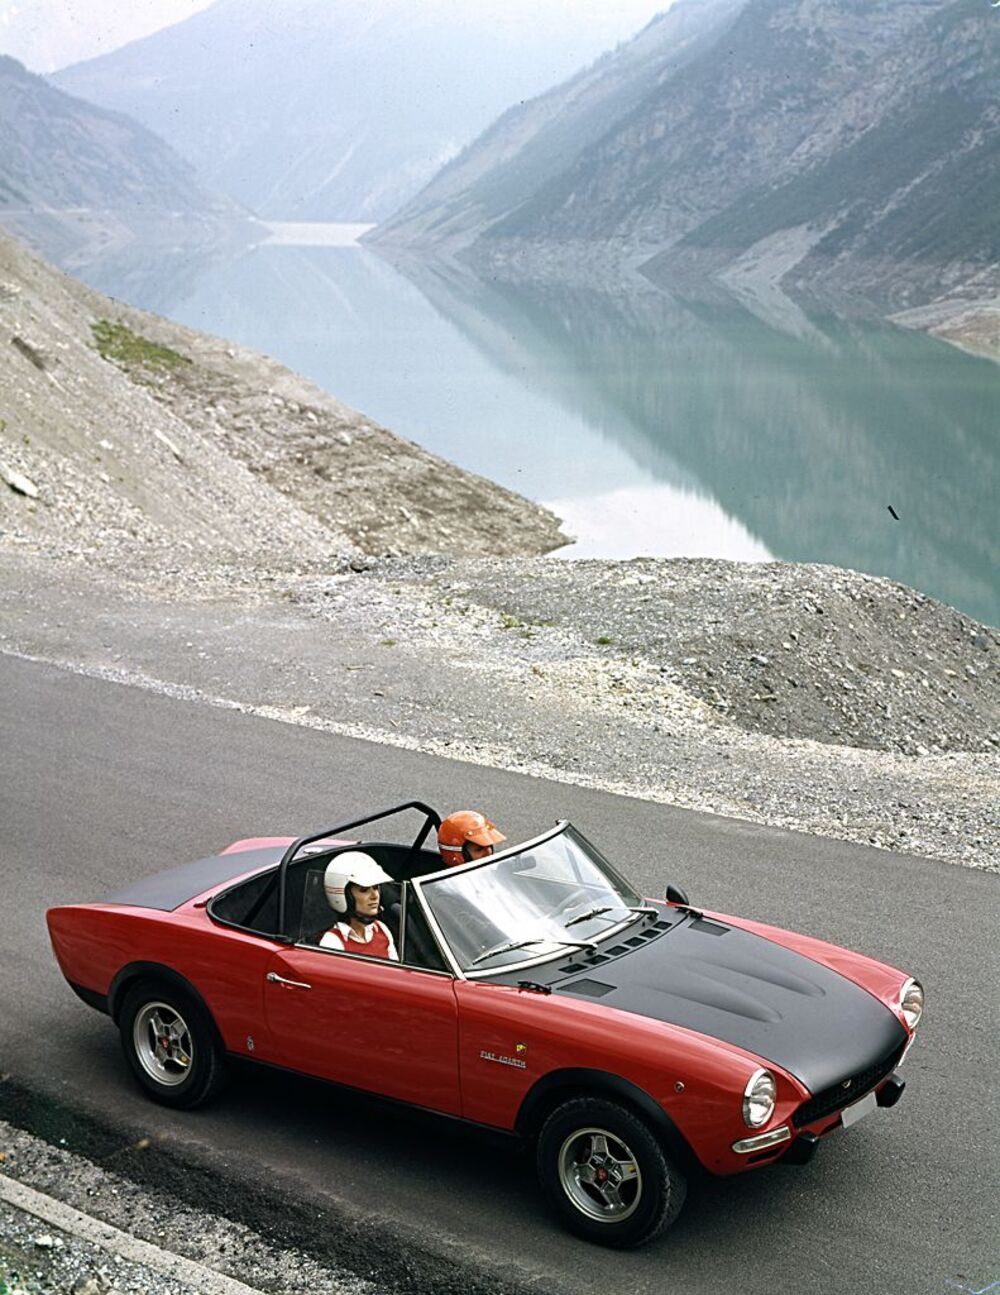 La Fiat 124 Spider nella versione Abarth fu la rappresentante di Fiat nei rally continentali